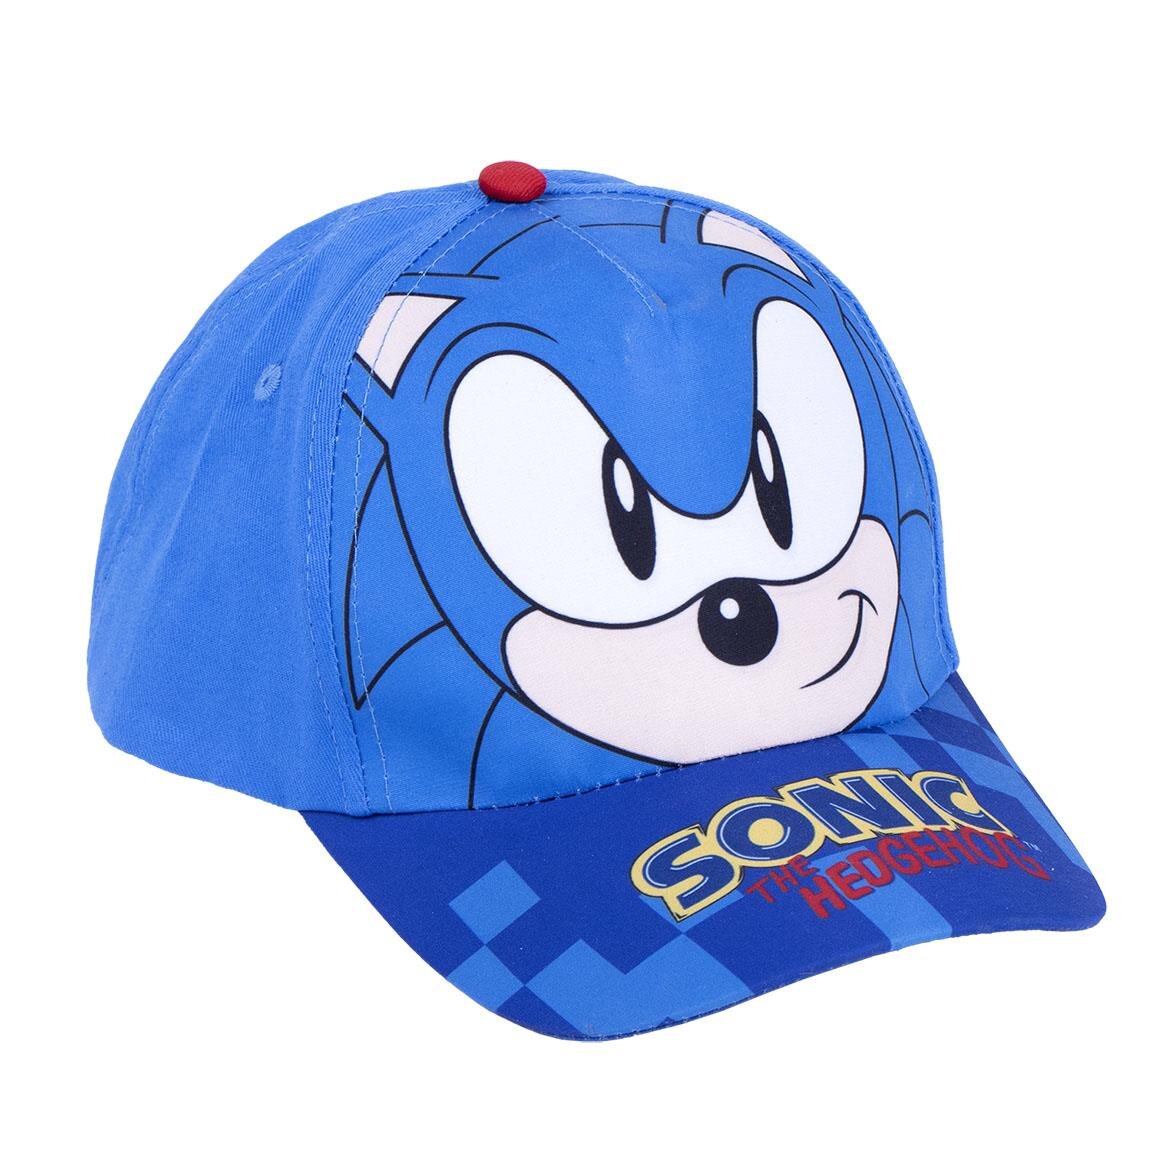 Sonic the Hedgehog - Pet en zonnebril voor kinderen